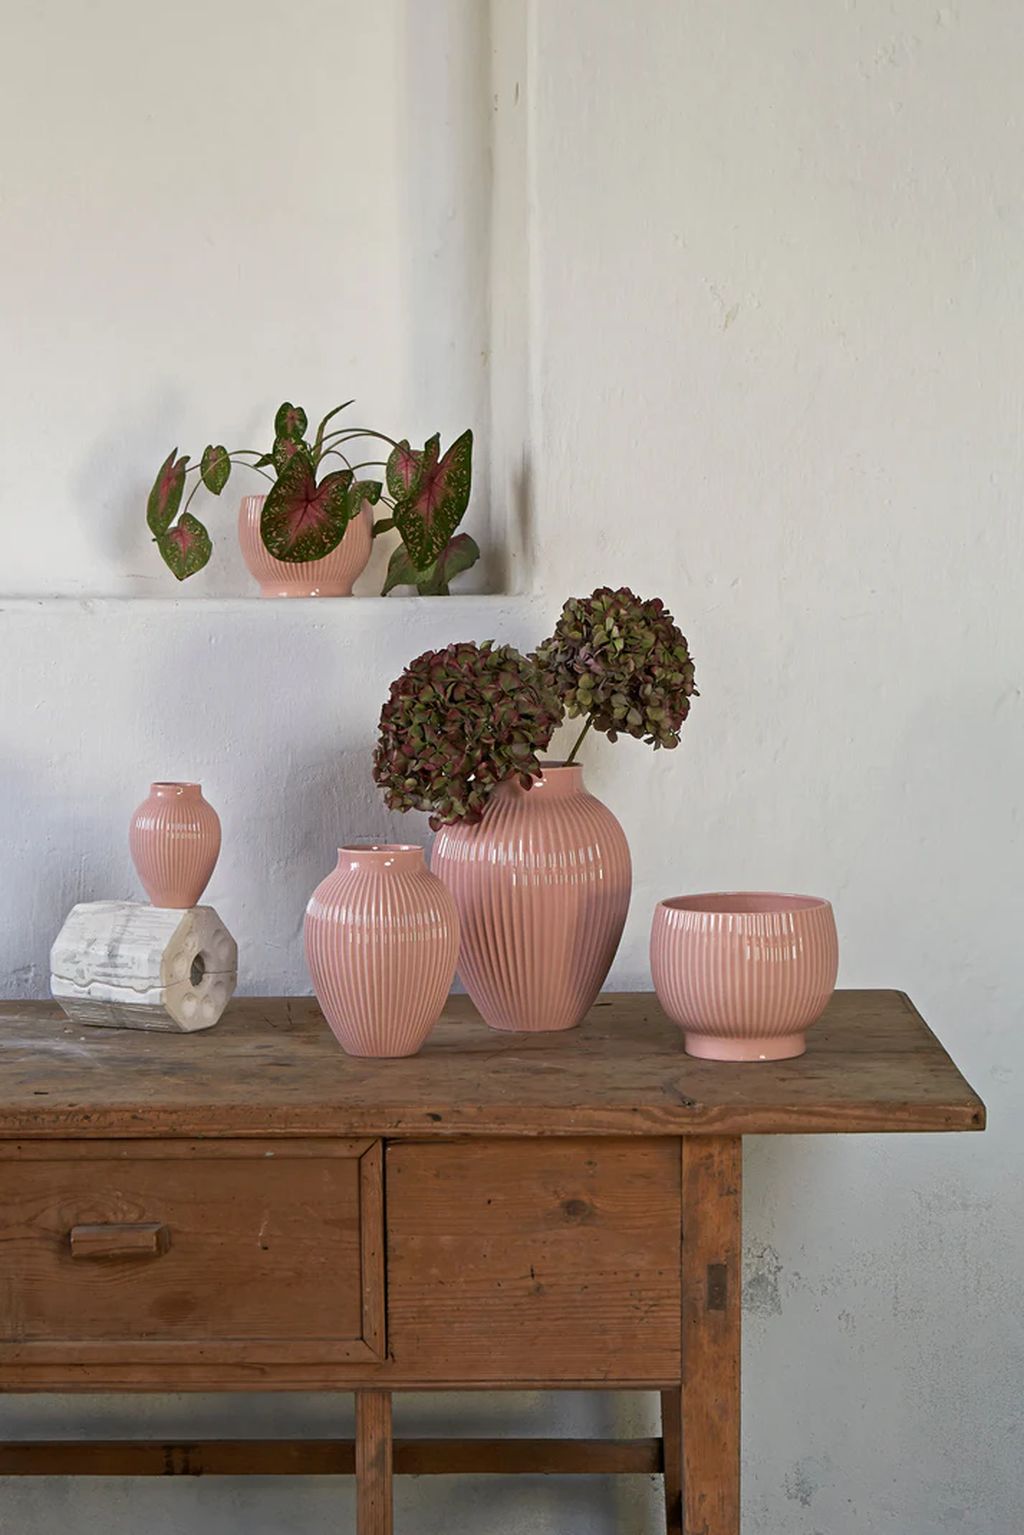 Knabstrup Keramik Flowerpot pyörillä Ø 14,5 cm, vaaleanpunainen